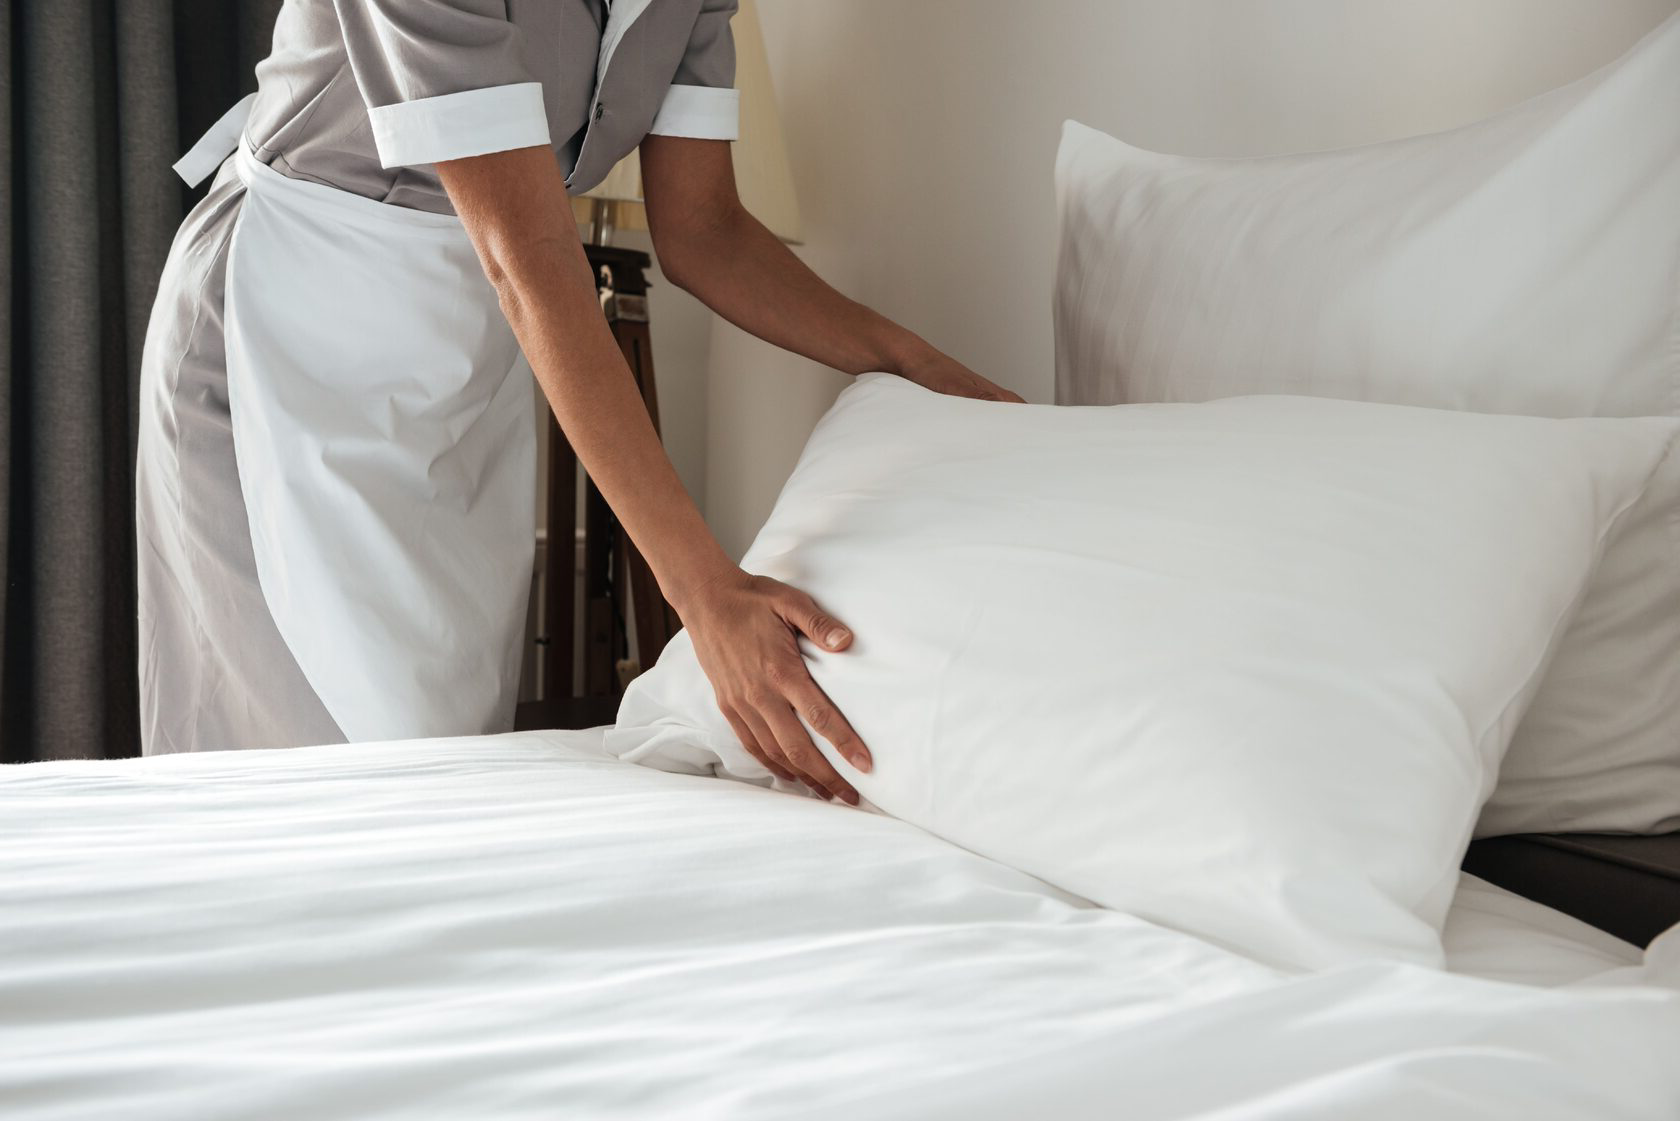 Уборка постели. Хаускипинг Роом. Заправленная кровать в отеле. Застеленная кровать. Заправленная постель в гостинице.